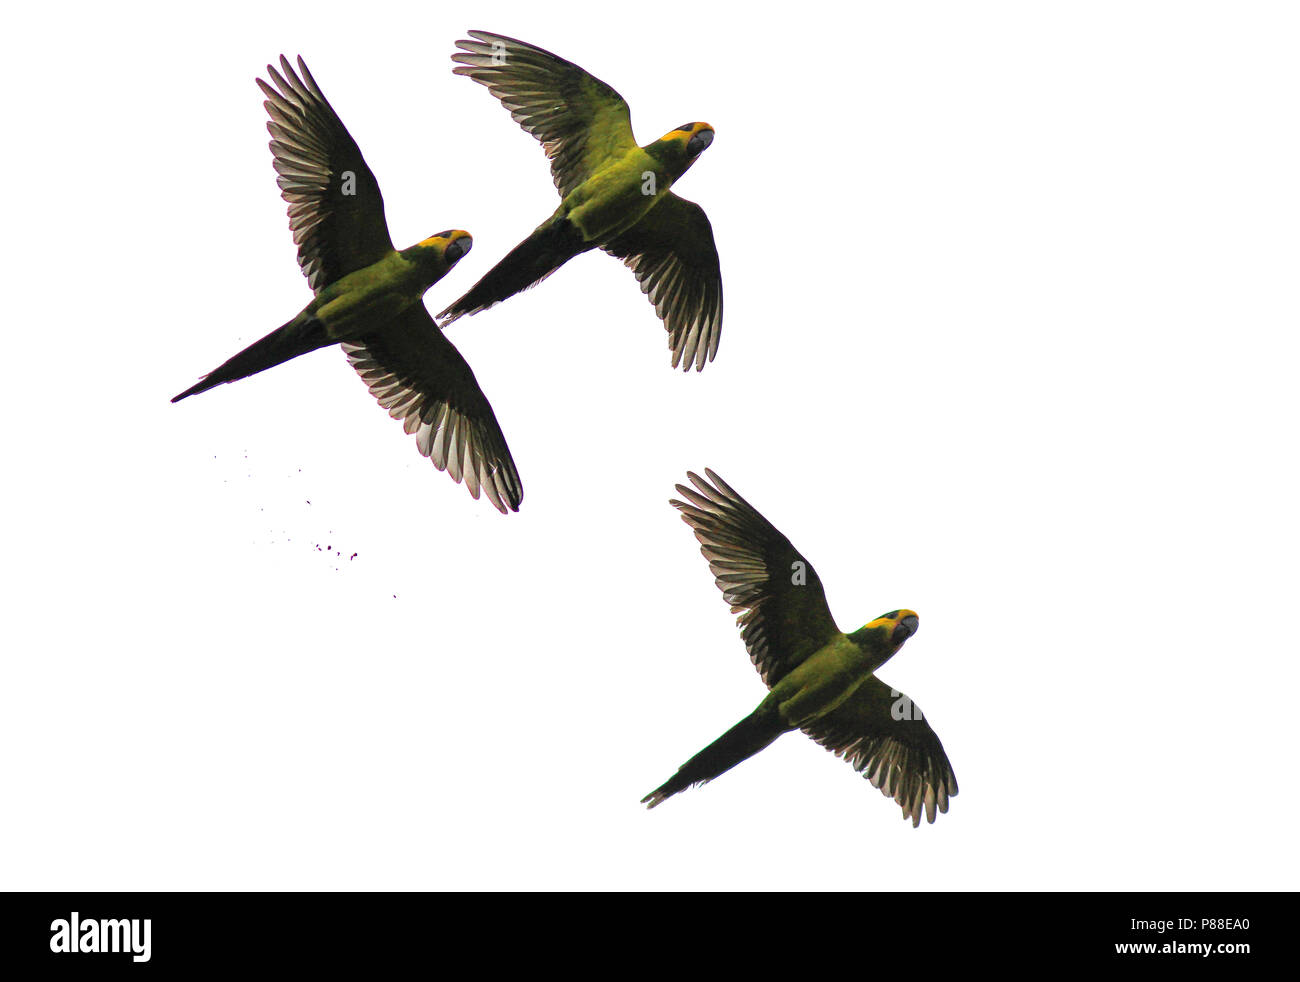 Yellow-eared Parrot (Ognorhynchus icterotis) une espèce en voie de disparition des Andes colombiennes. Banque D'Images